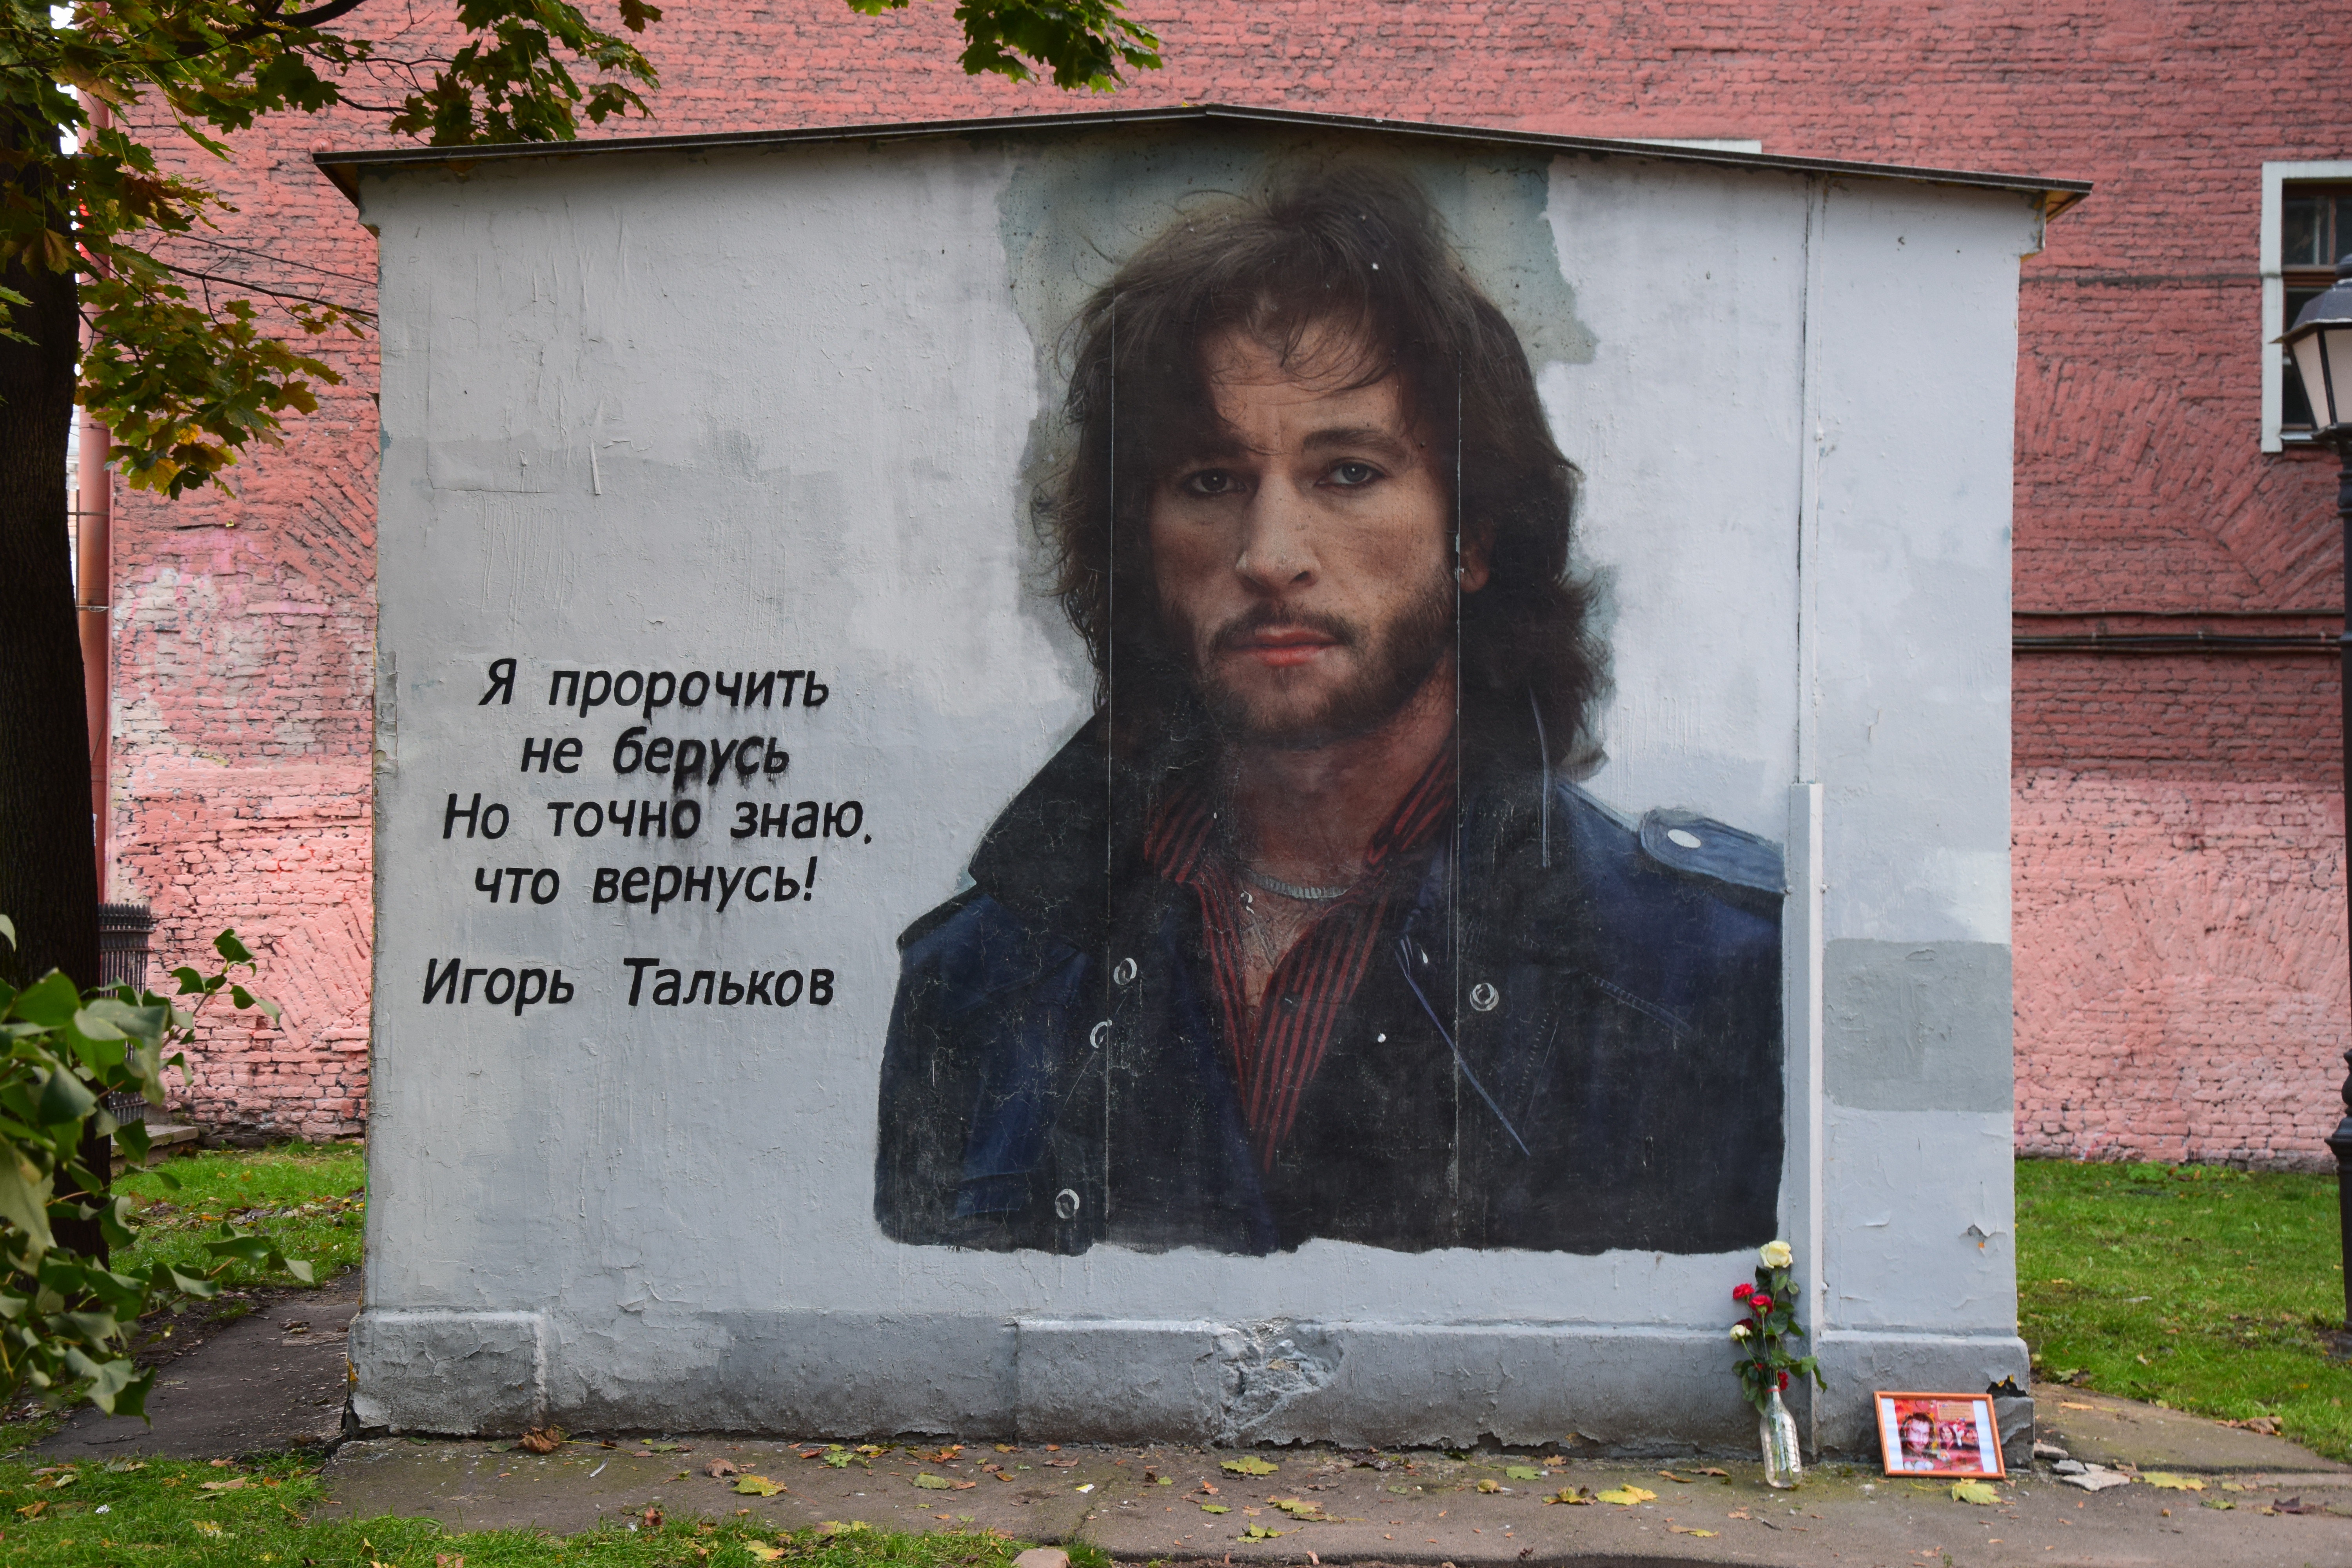 3. Двор с граффити-портретом Игоря Талькова на Литейном проспекте 37-39 в Санкт-Петербурге